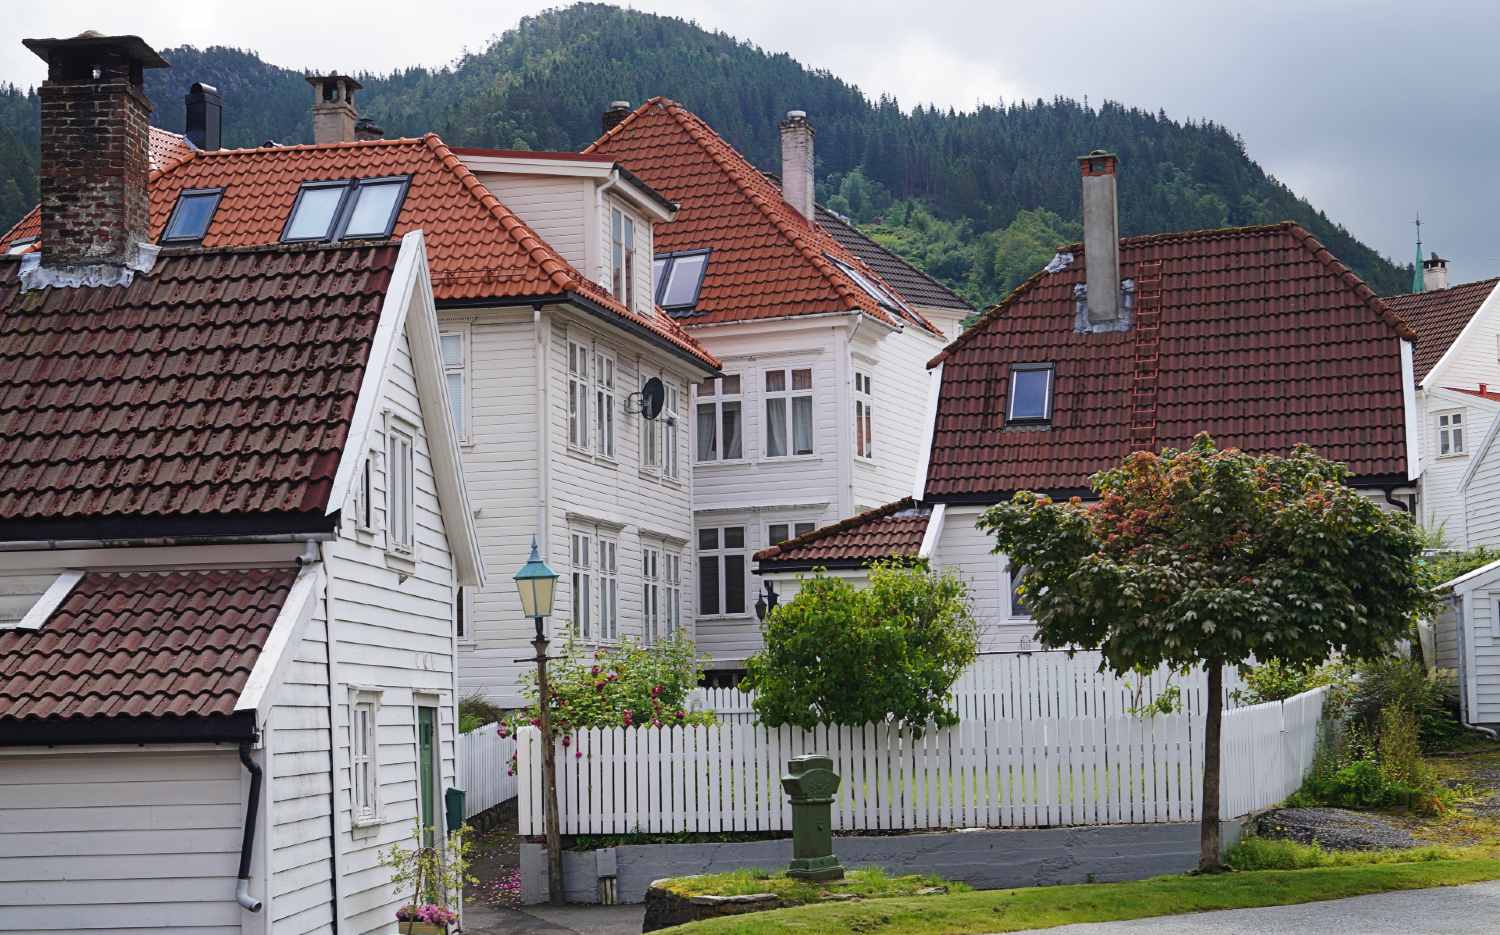 Neighborhoods in Bergen city centre - Sandviken